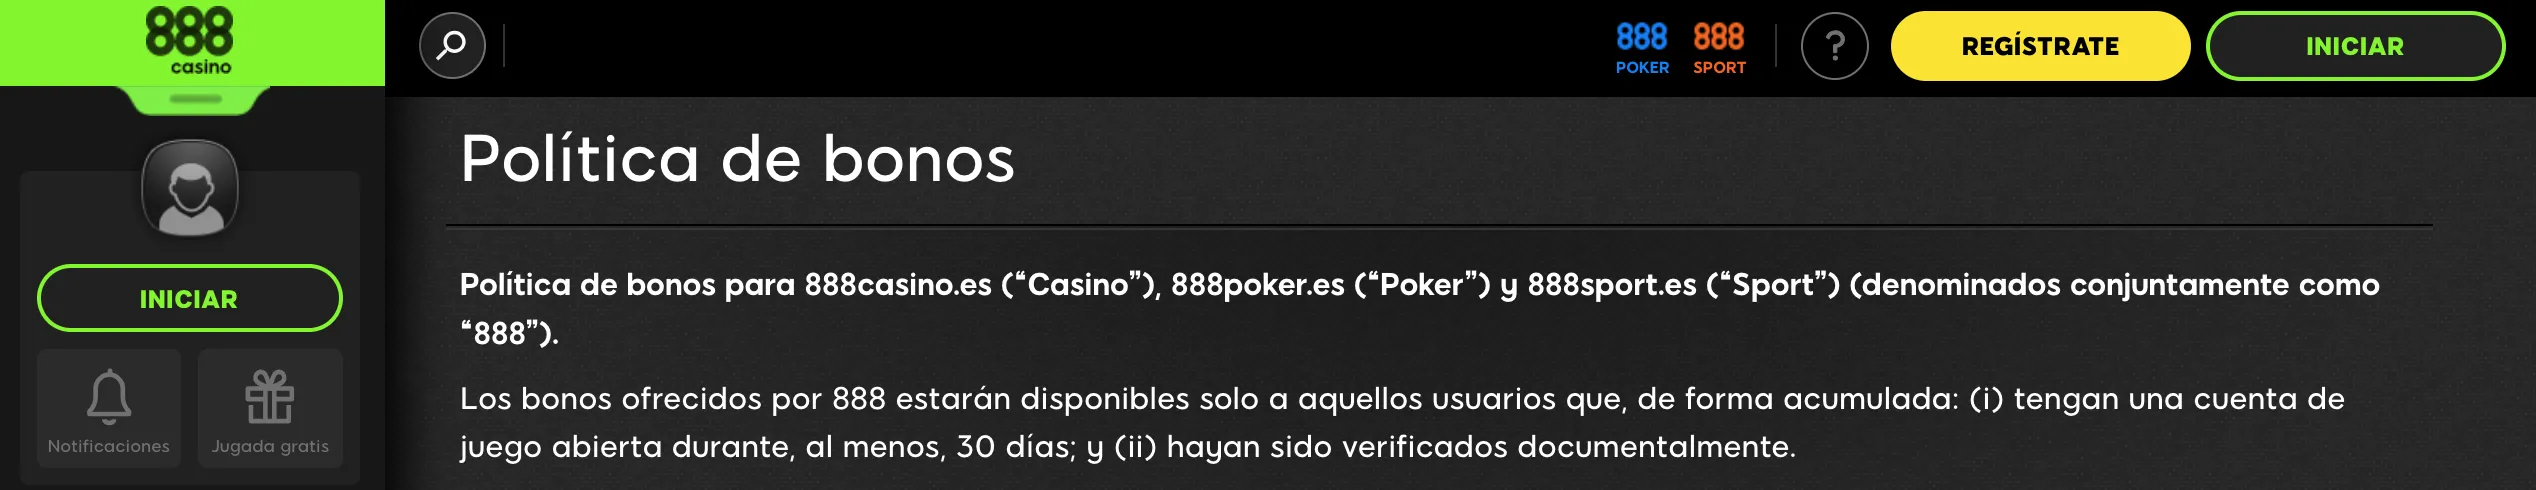 Políticas bonos 888 casino